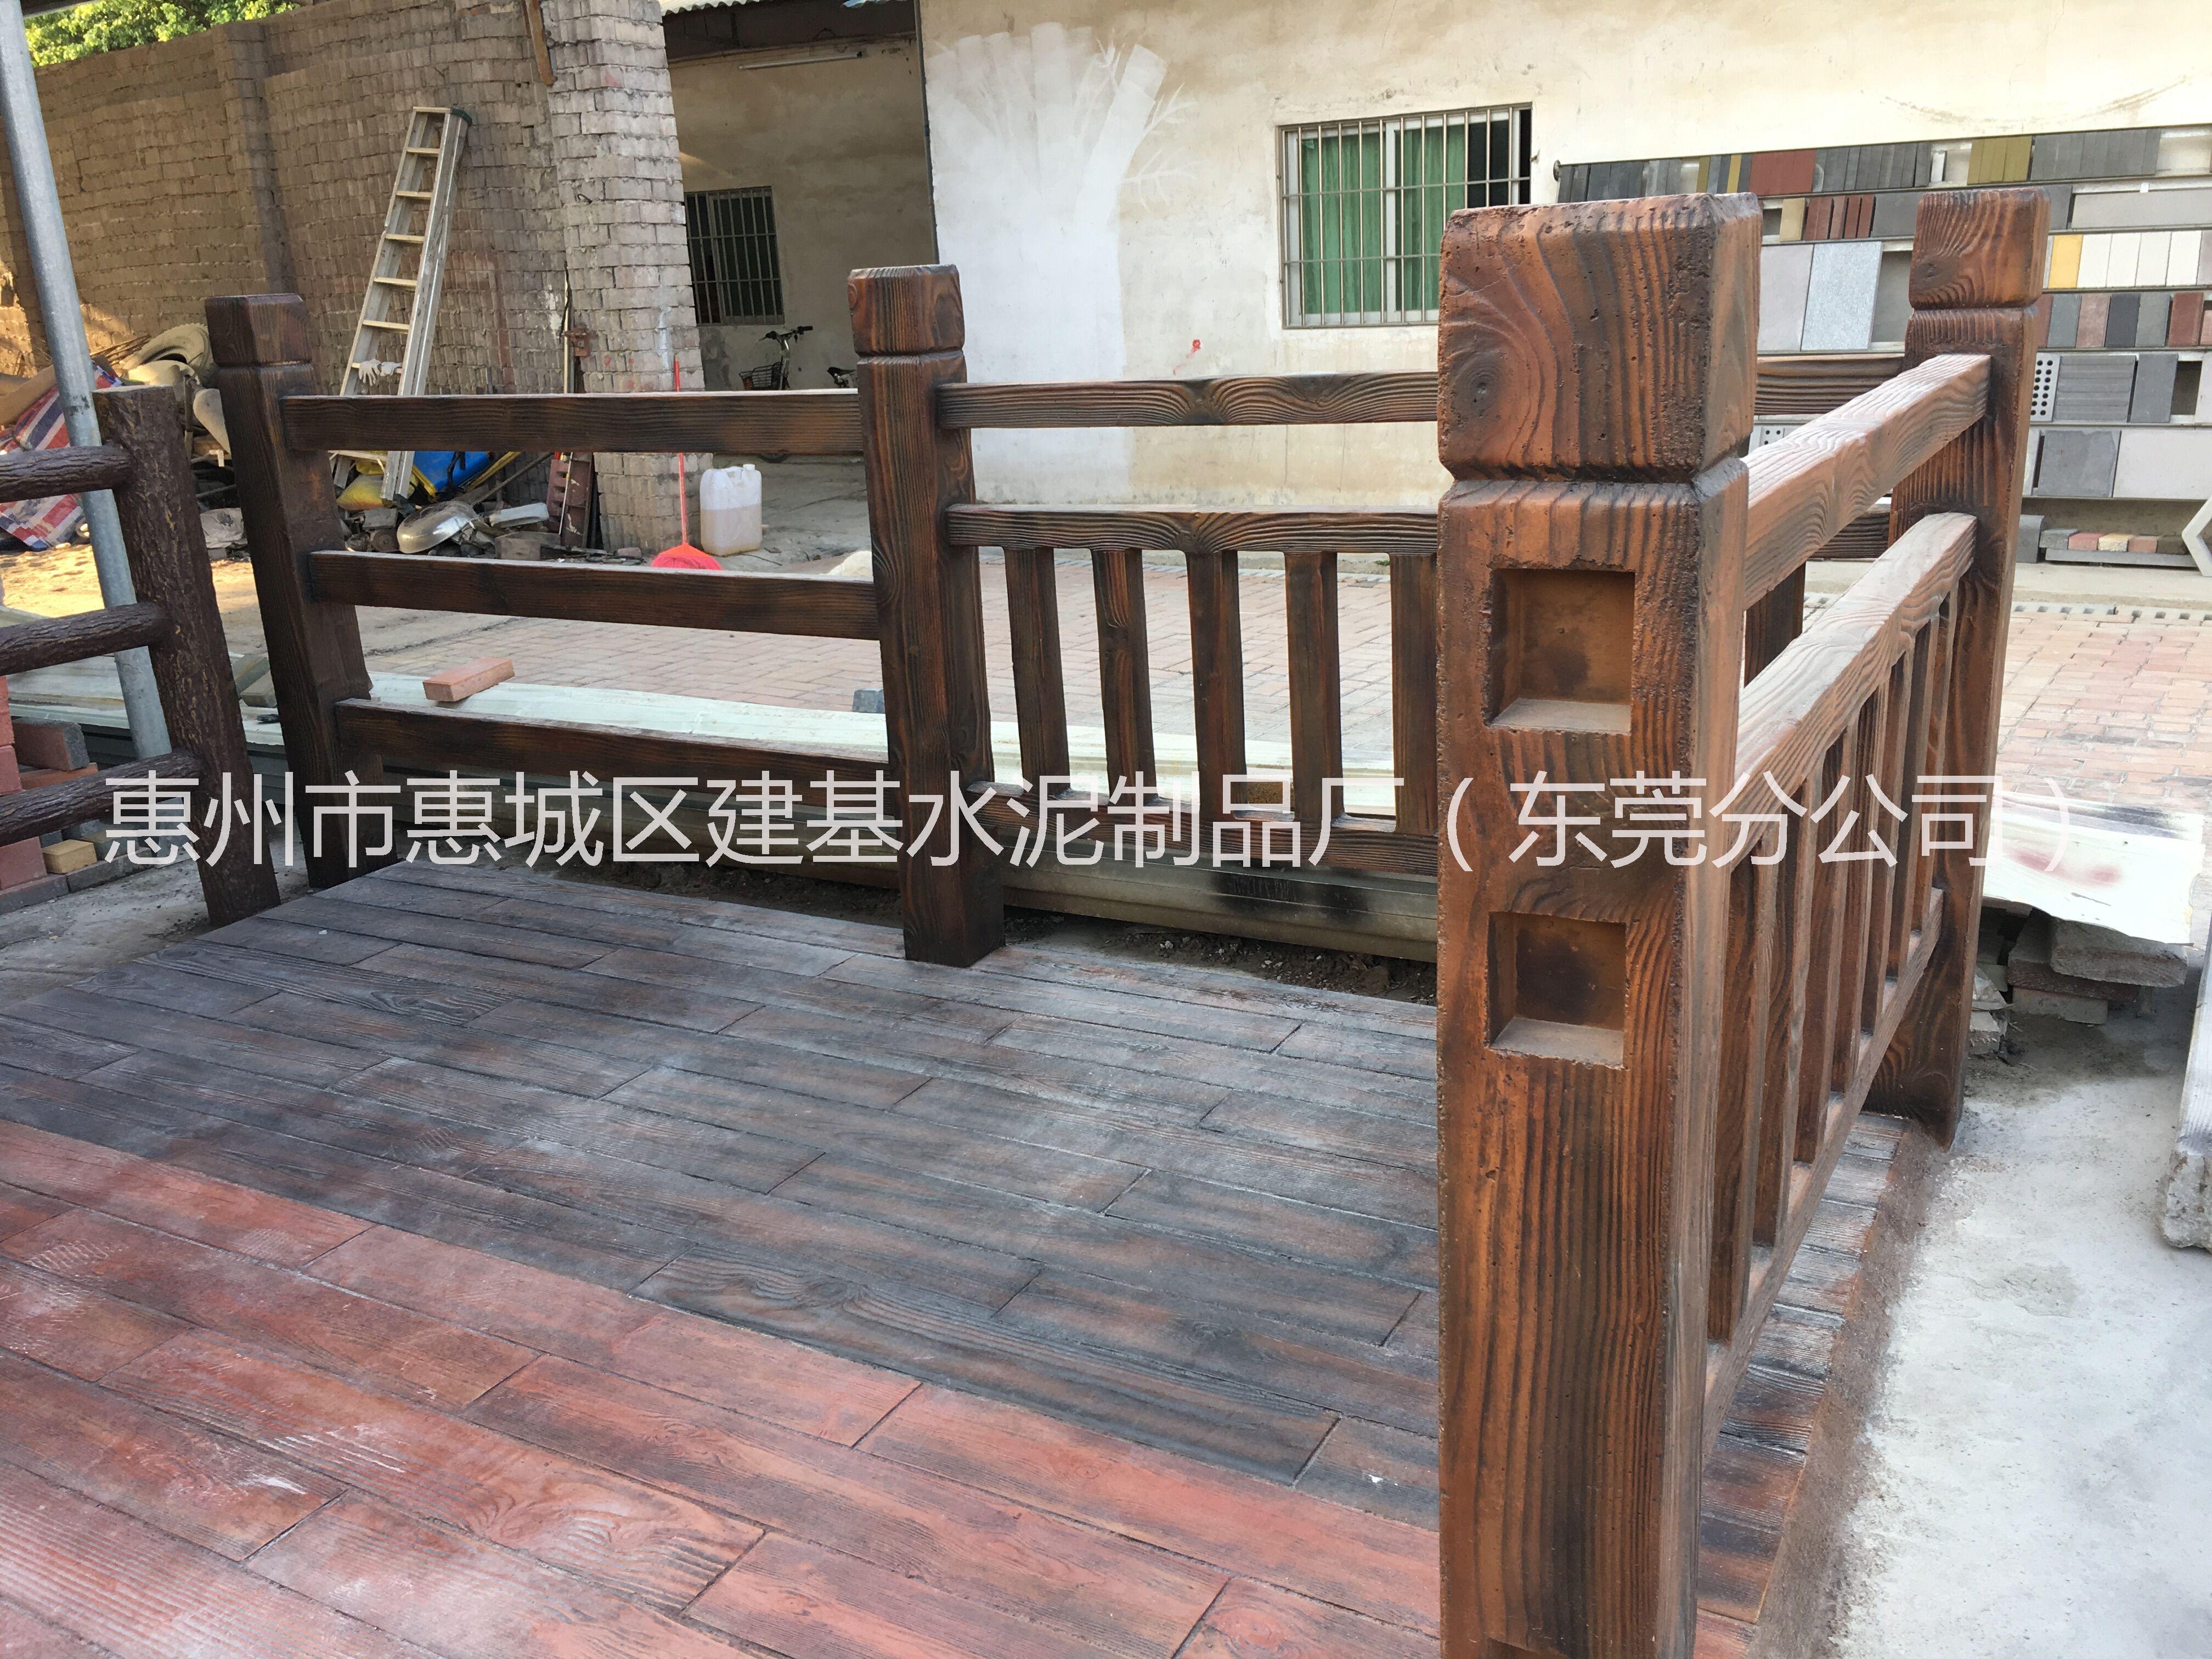 惠州市仿木纹地板工程深圳仿木厂家东莞仿木地板安装